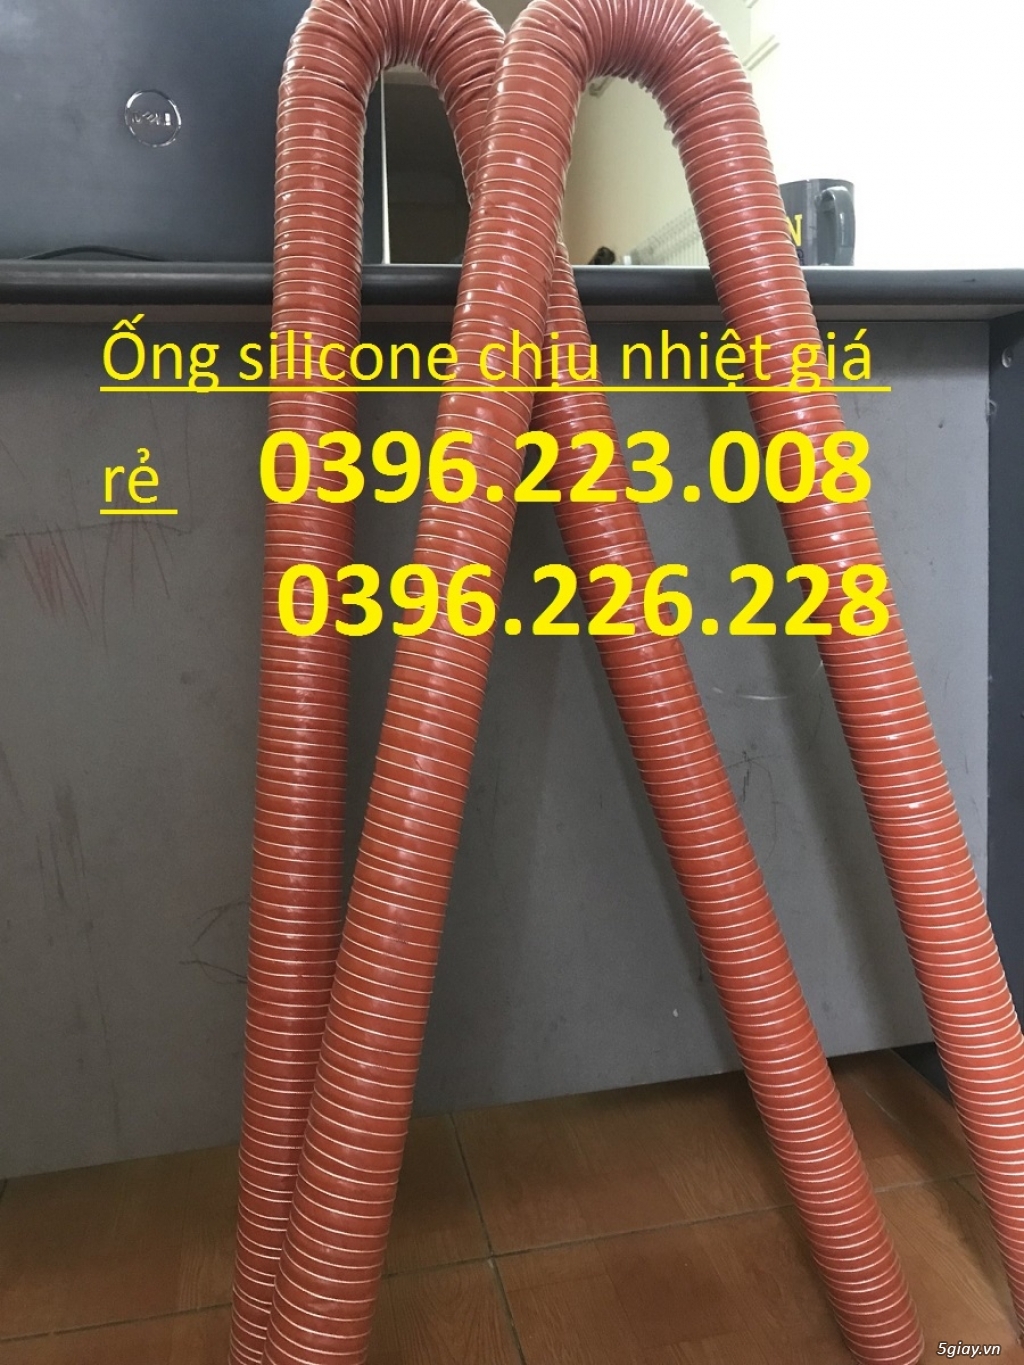 Nơi bán ống Silicone chịu nhiệt D90 công nghệ hàn quốc chất lượng cao. - 3